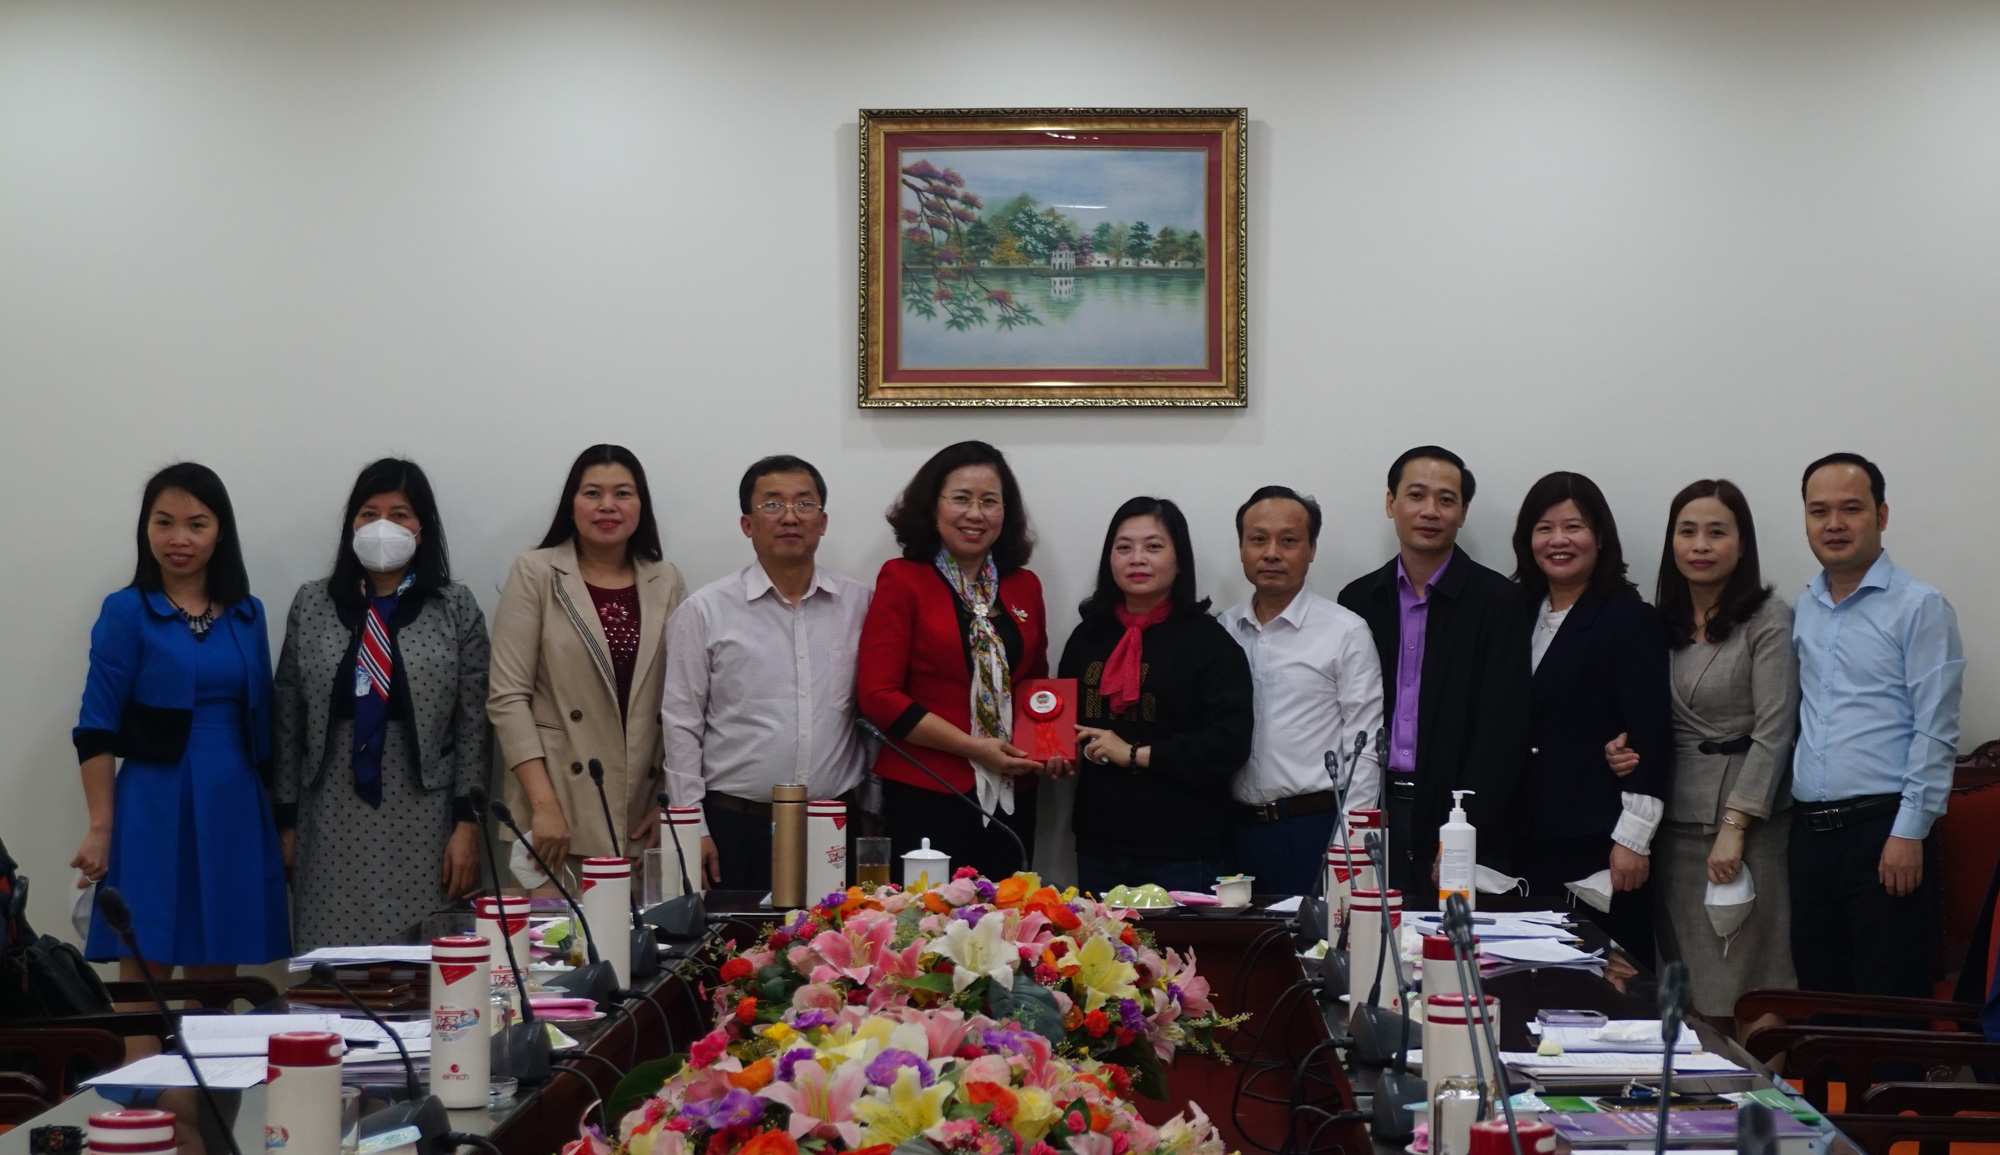 Phó Chủ tịch Hội NDVN Bùi Thị Thơm: Khơi dậy tiềm năng, phát huy vai trò cán bộ nữ vì sự tiến bộ phụ nữ - Ảnh 3.